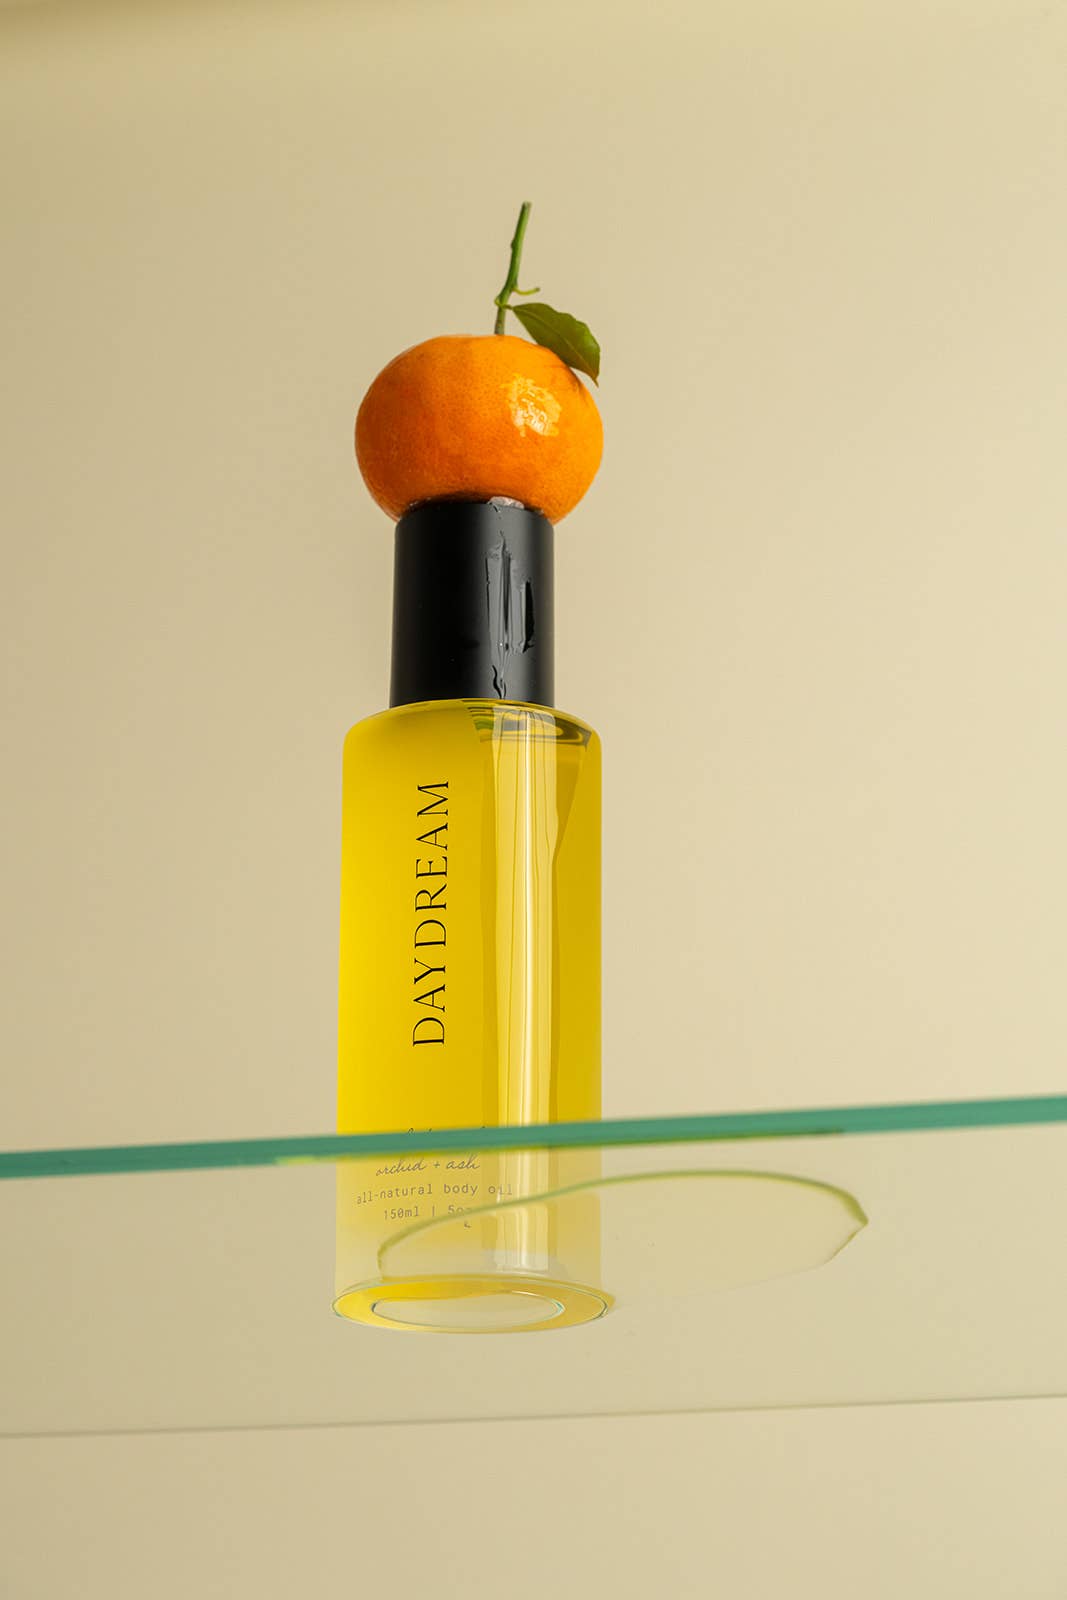 Orange + Neroli All-Natural Aromatic Body Oil | DAYDREAM